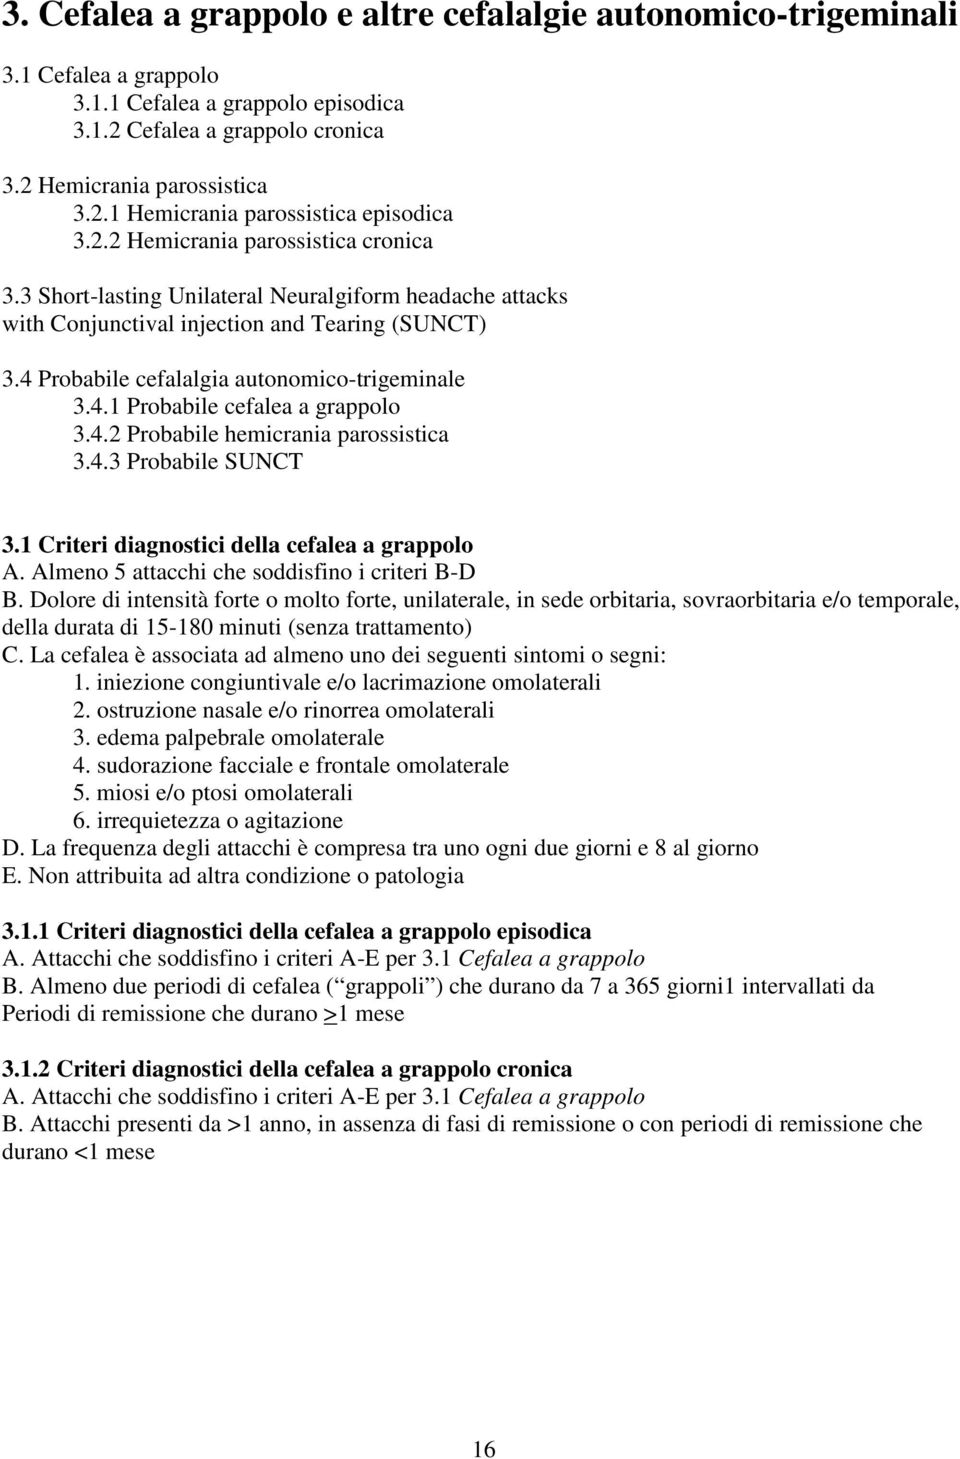 4.2 Probabile hemicrania parossistica 3.4.3 Probabile SUNCT 3.1 Criteri diagnostici della cefalea a grappolo A. Almeno 5 attacchi che soddisfino i criteri B-D B.